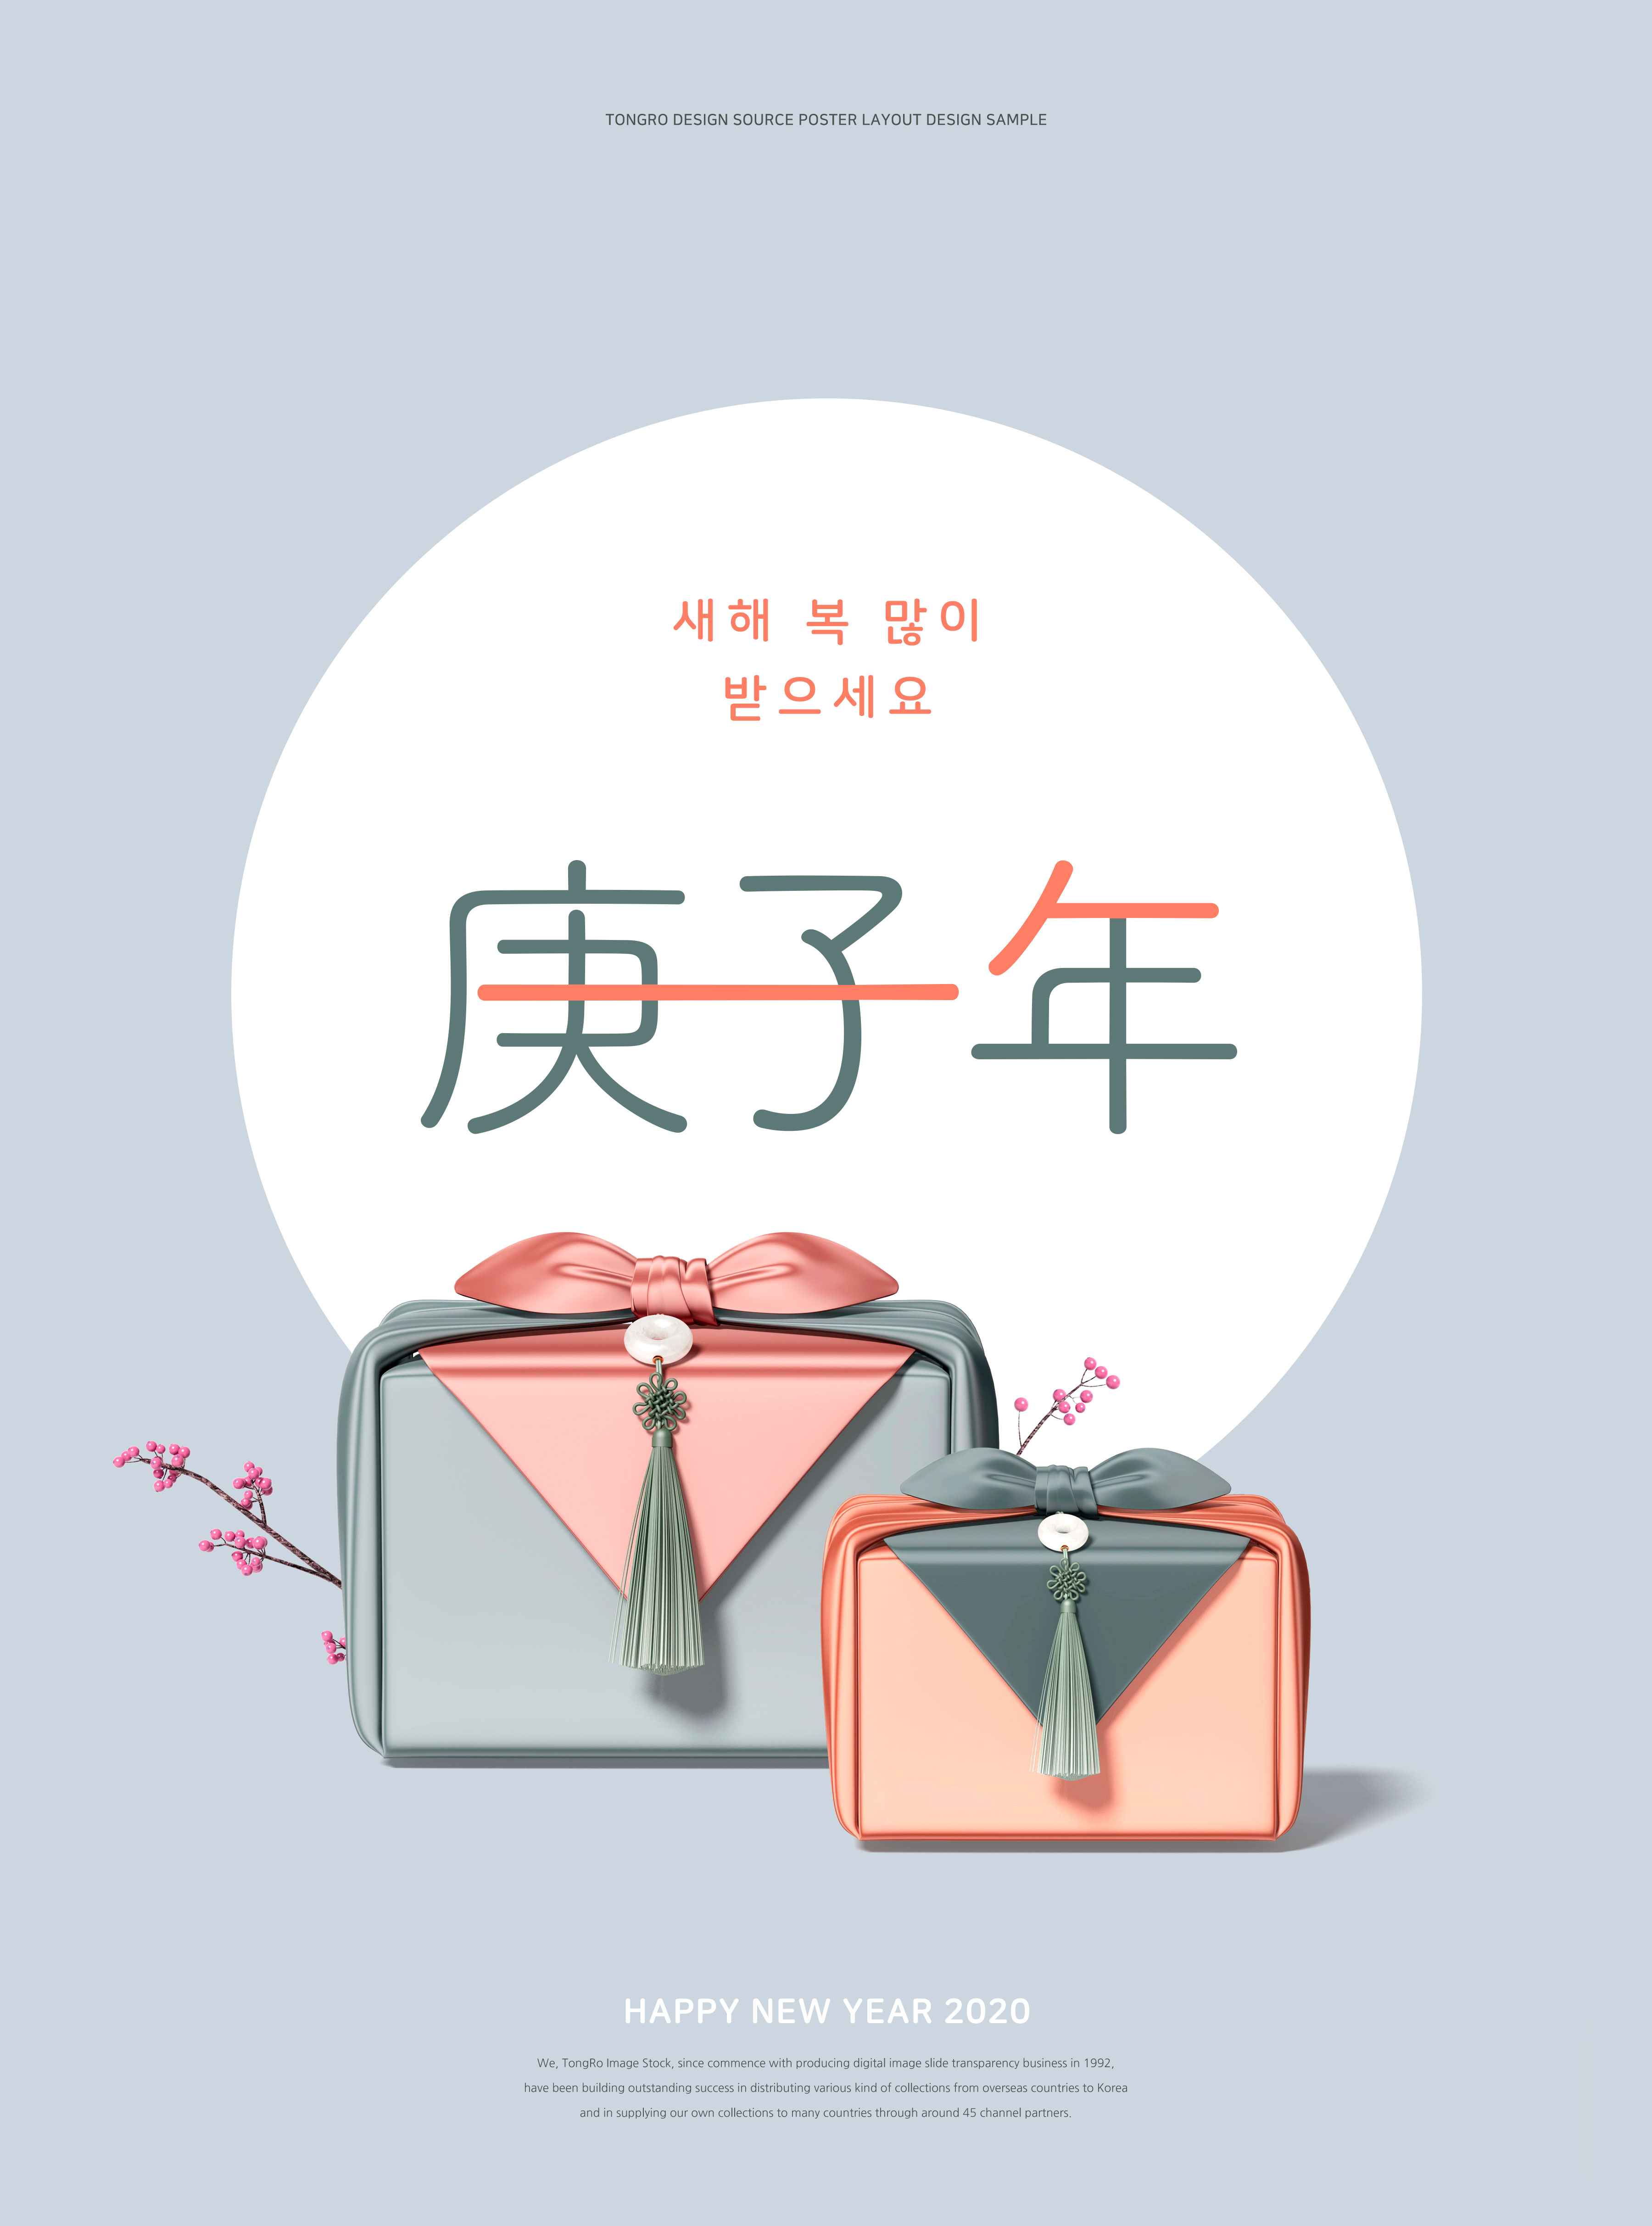 古典韩风2020鼠年主题礼品海报设计模板[PSD]插图